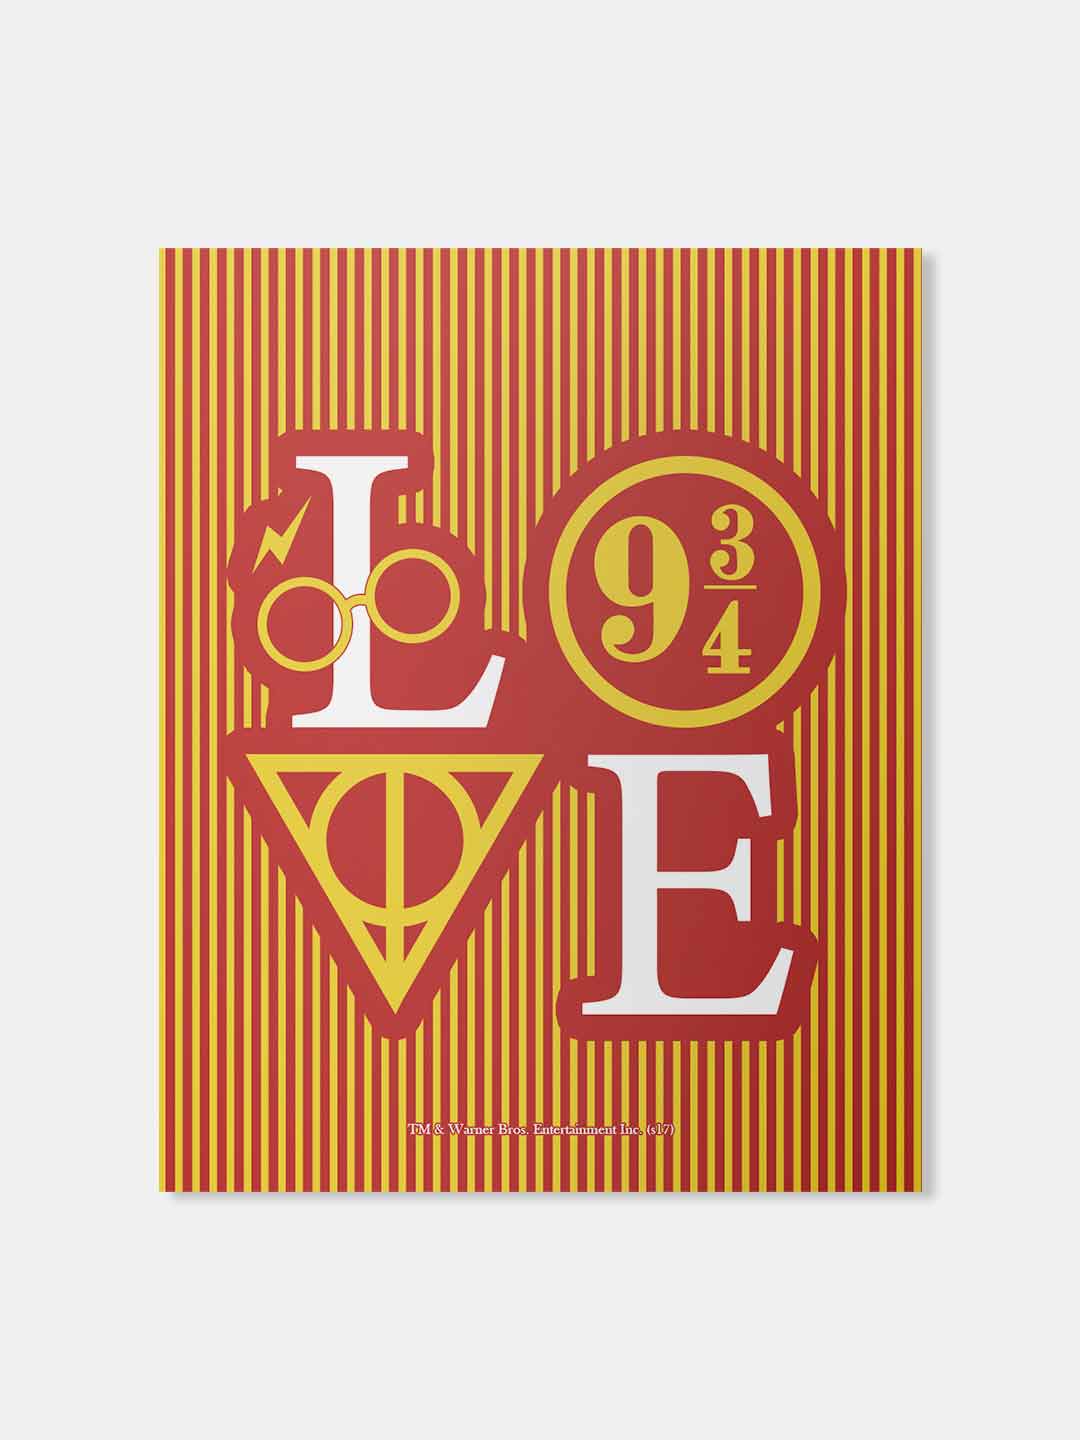 Buy Valentine Love 9 34 - Fridge Magnets Fridge Magnets Online